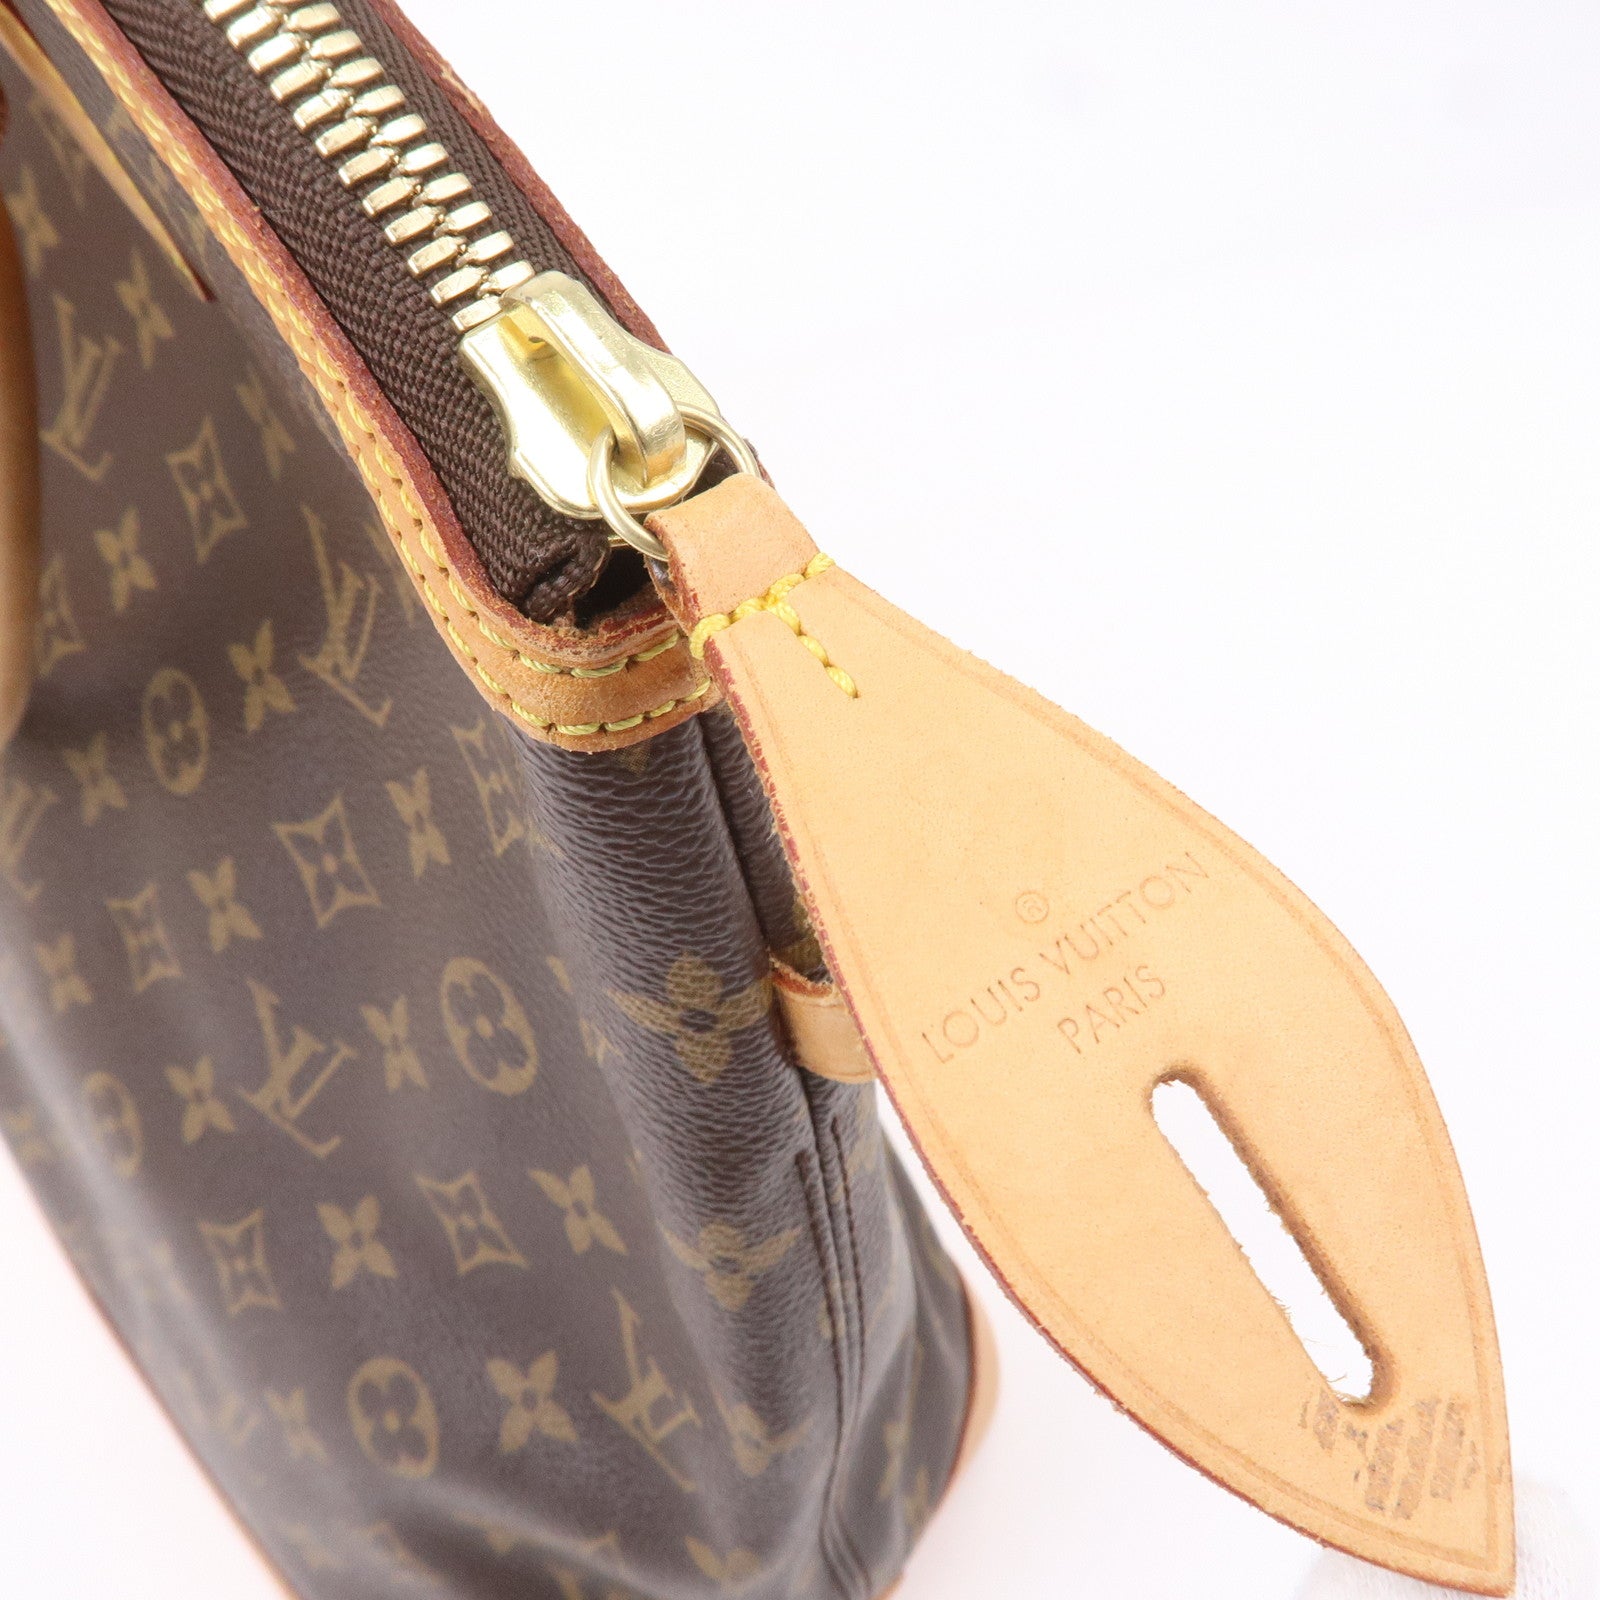 Authentic Louis Vuitton Monogram Vertical Lockit Bag Excellent condition!